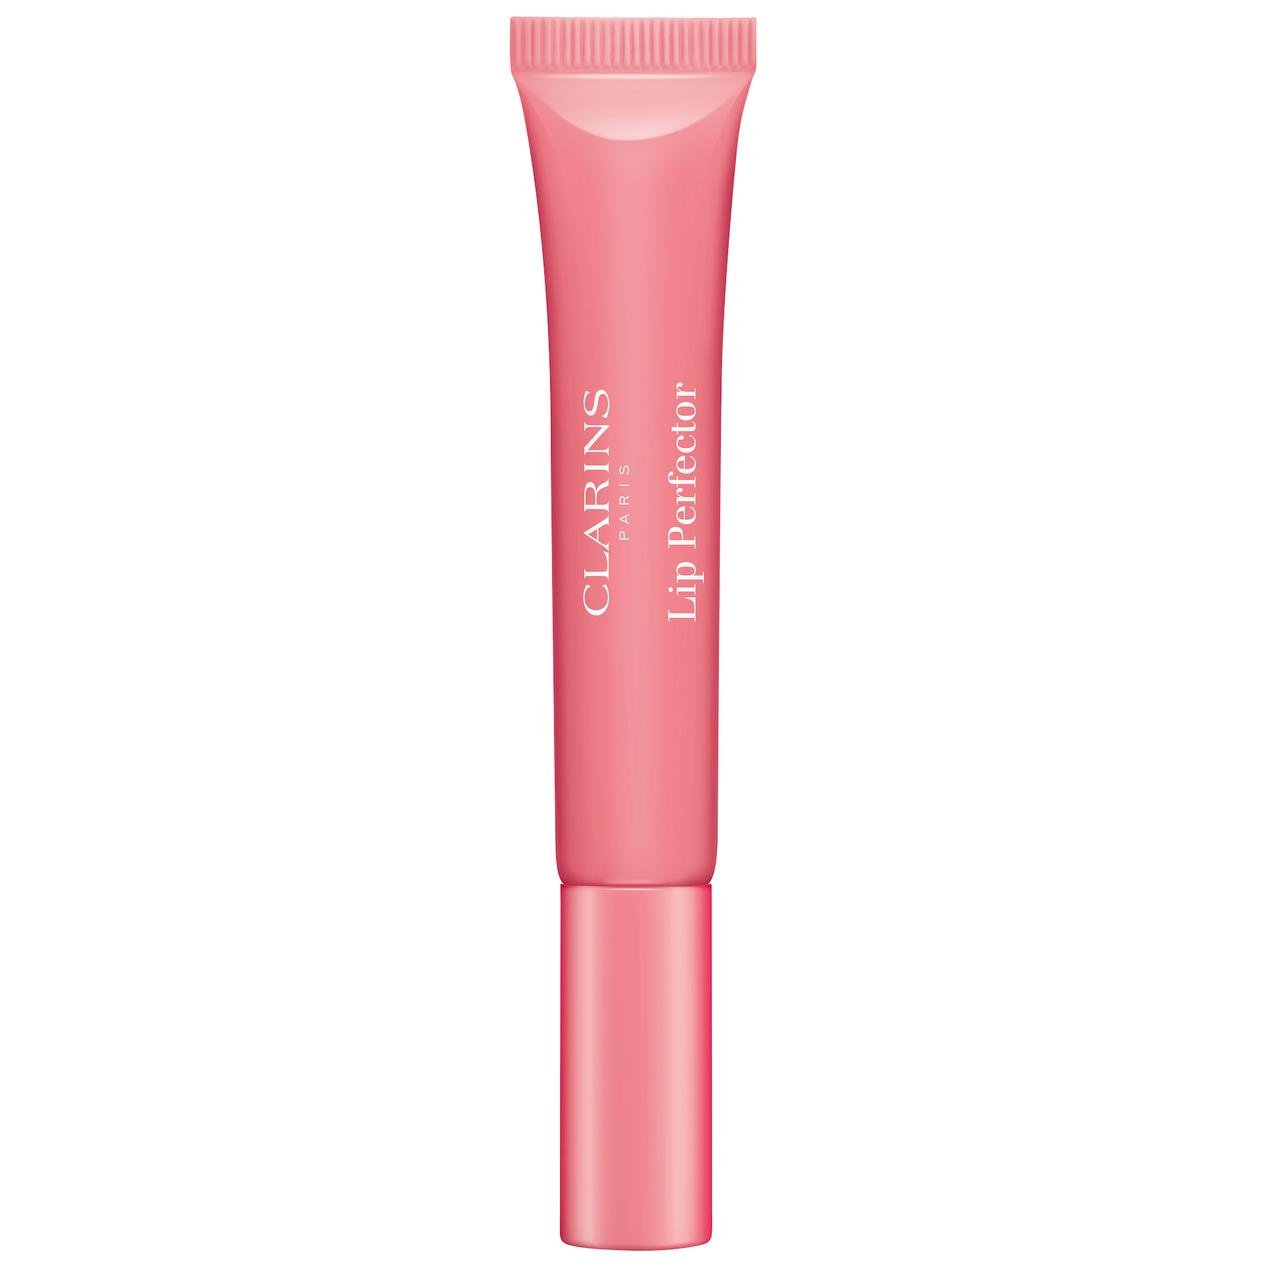 Instant Light Natural Lip Perfector 01 Rose Shimmer för 235 kr på Kicks